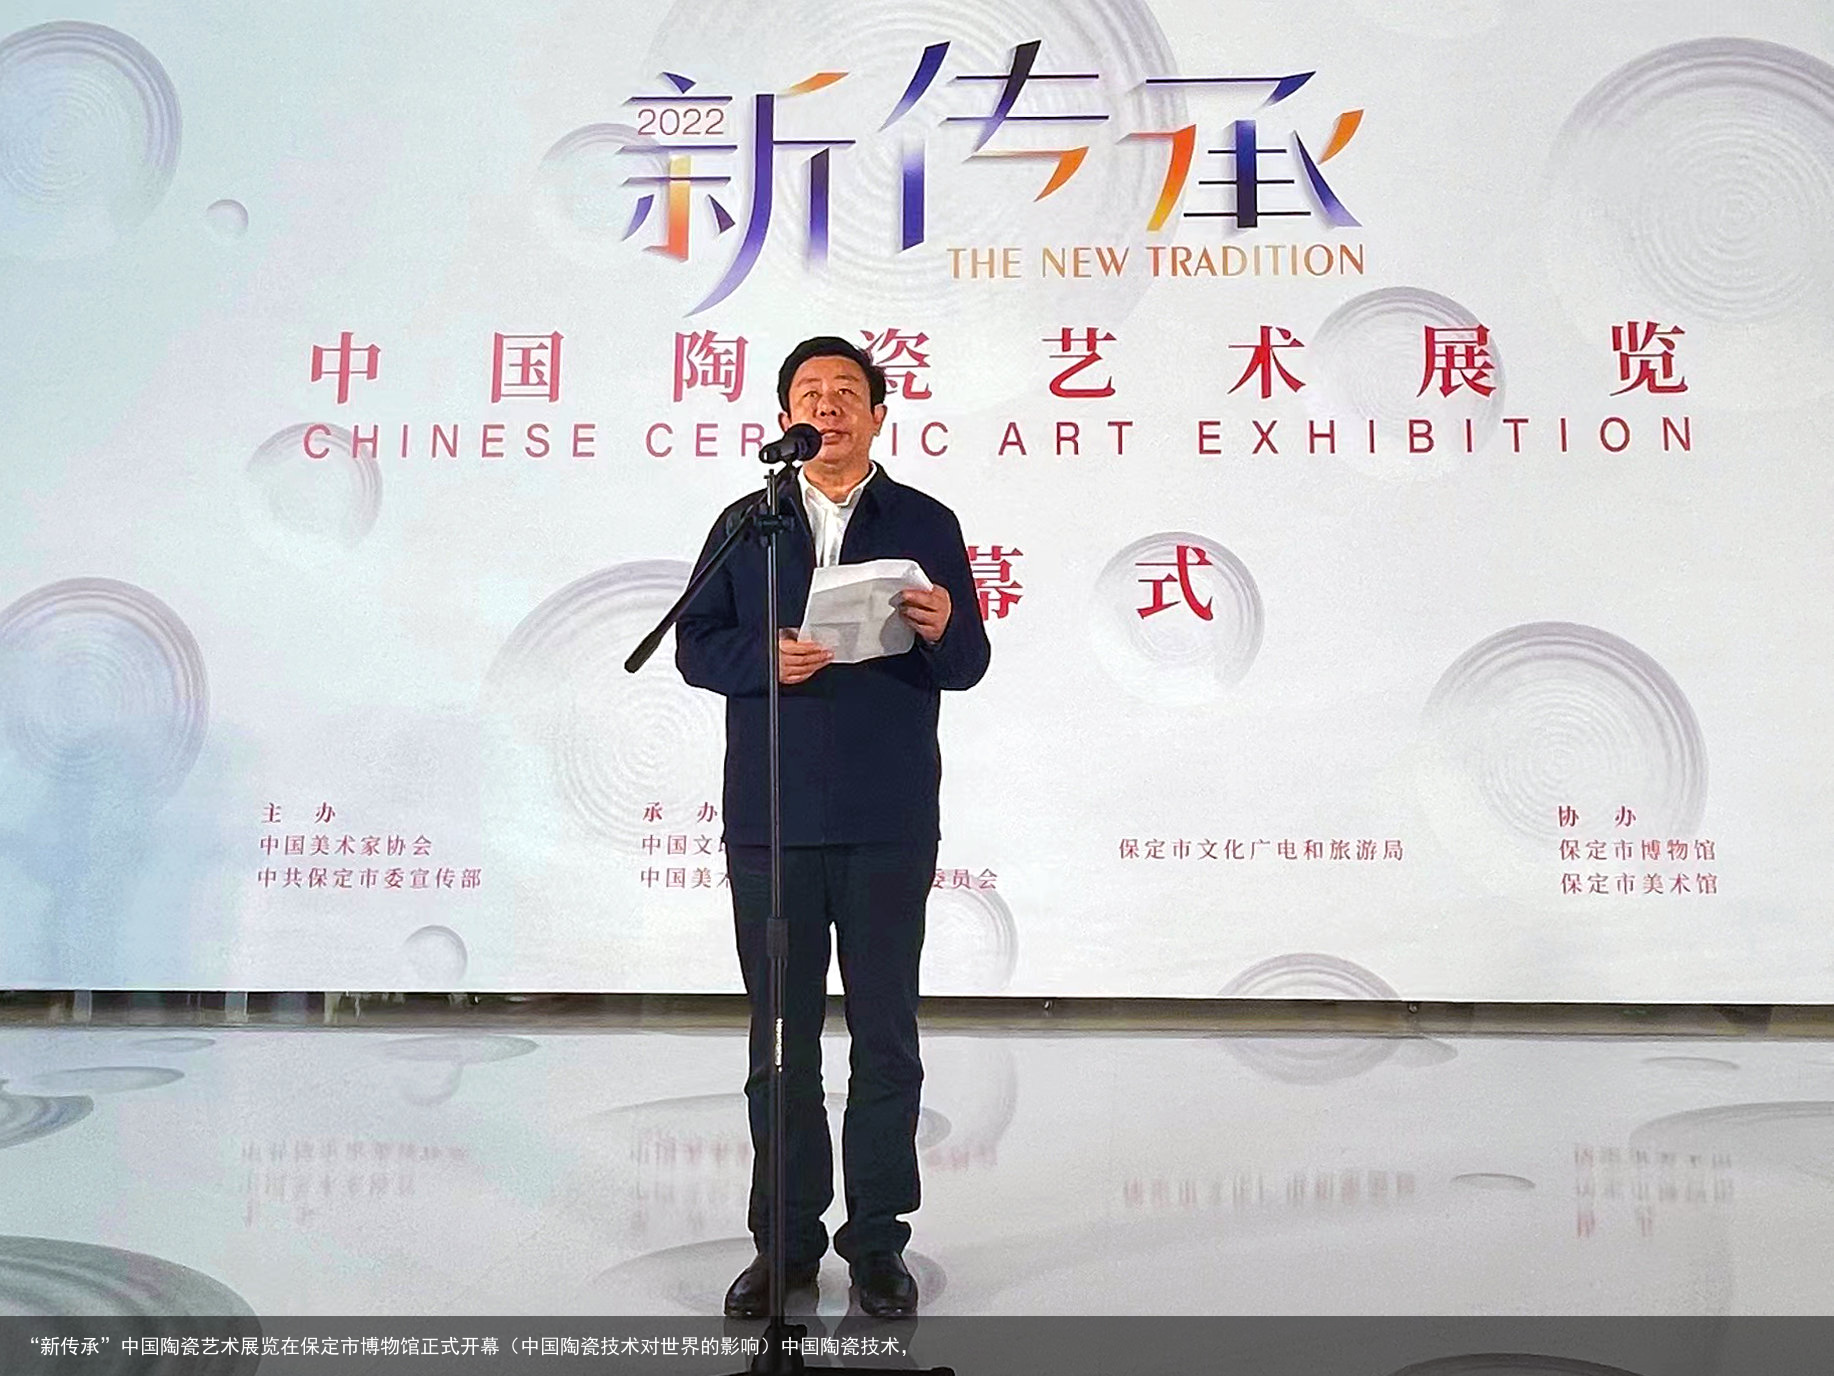 “新传承”中国陶瓷艺术展览在保定市博物馆正式开幕（中国陶瓷技术对世界的影响）中国陶瓷技术，